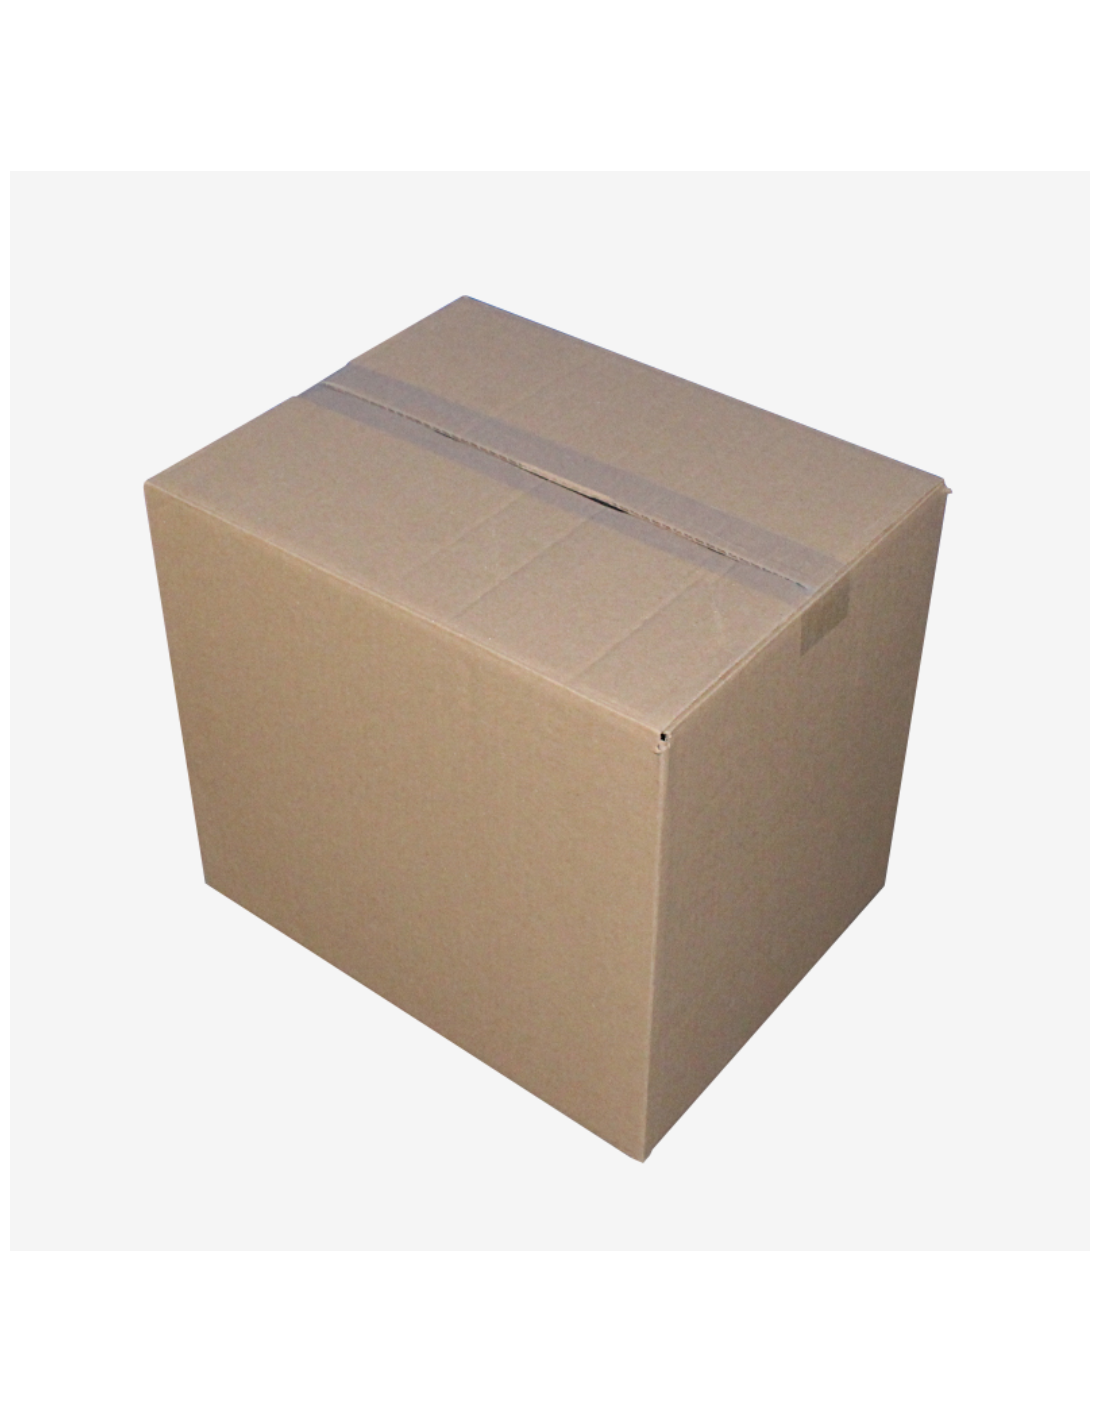 Caisse de transport carton pour 5 plateaux - Carton de 10